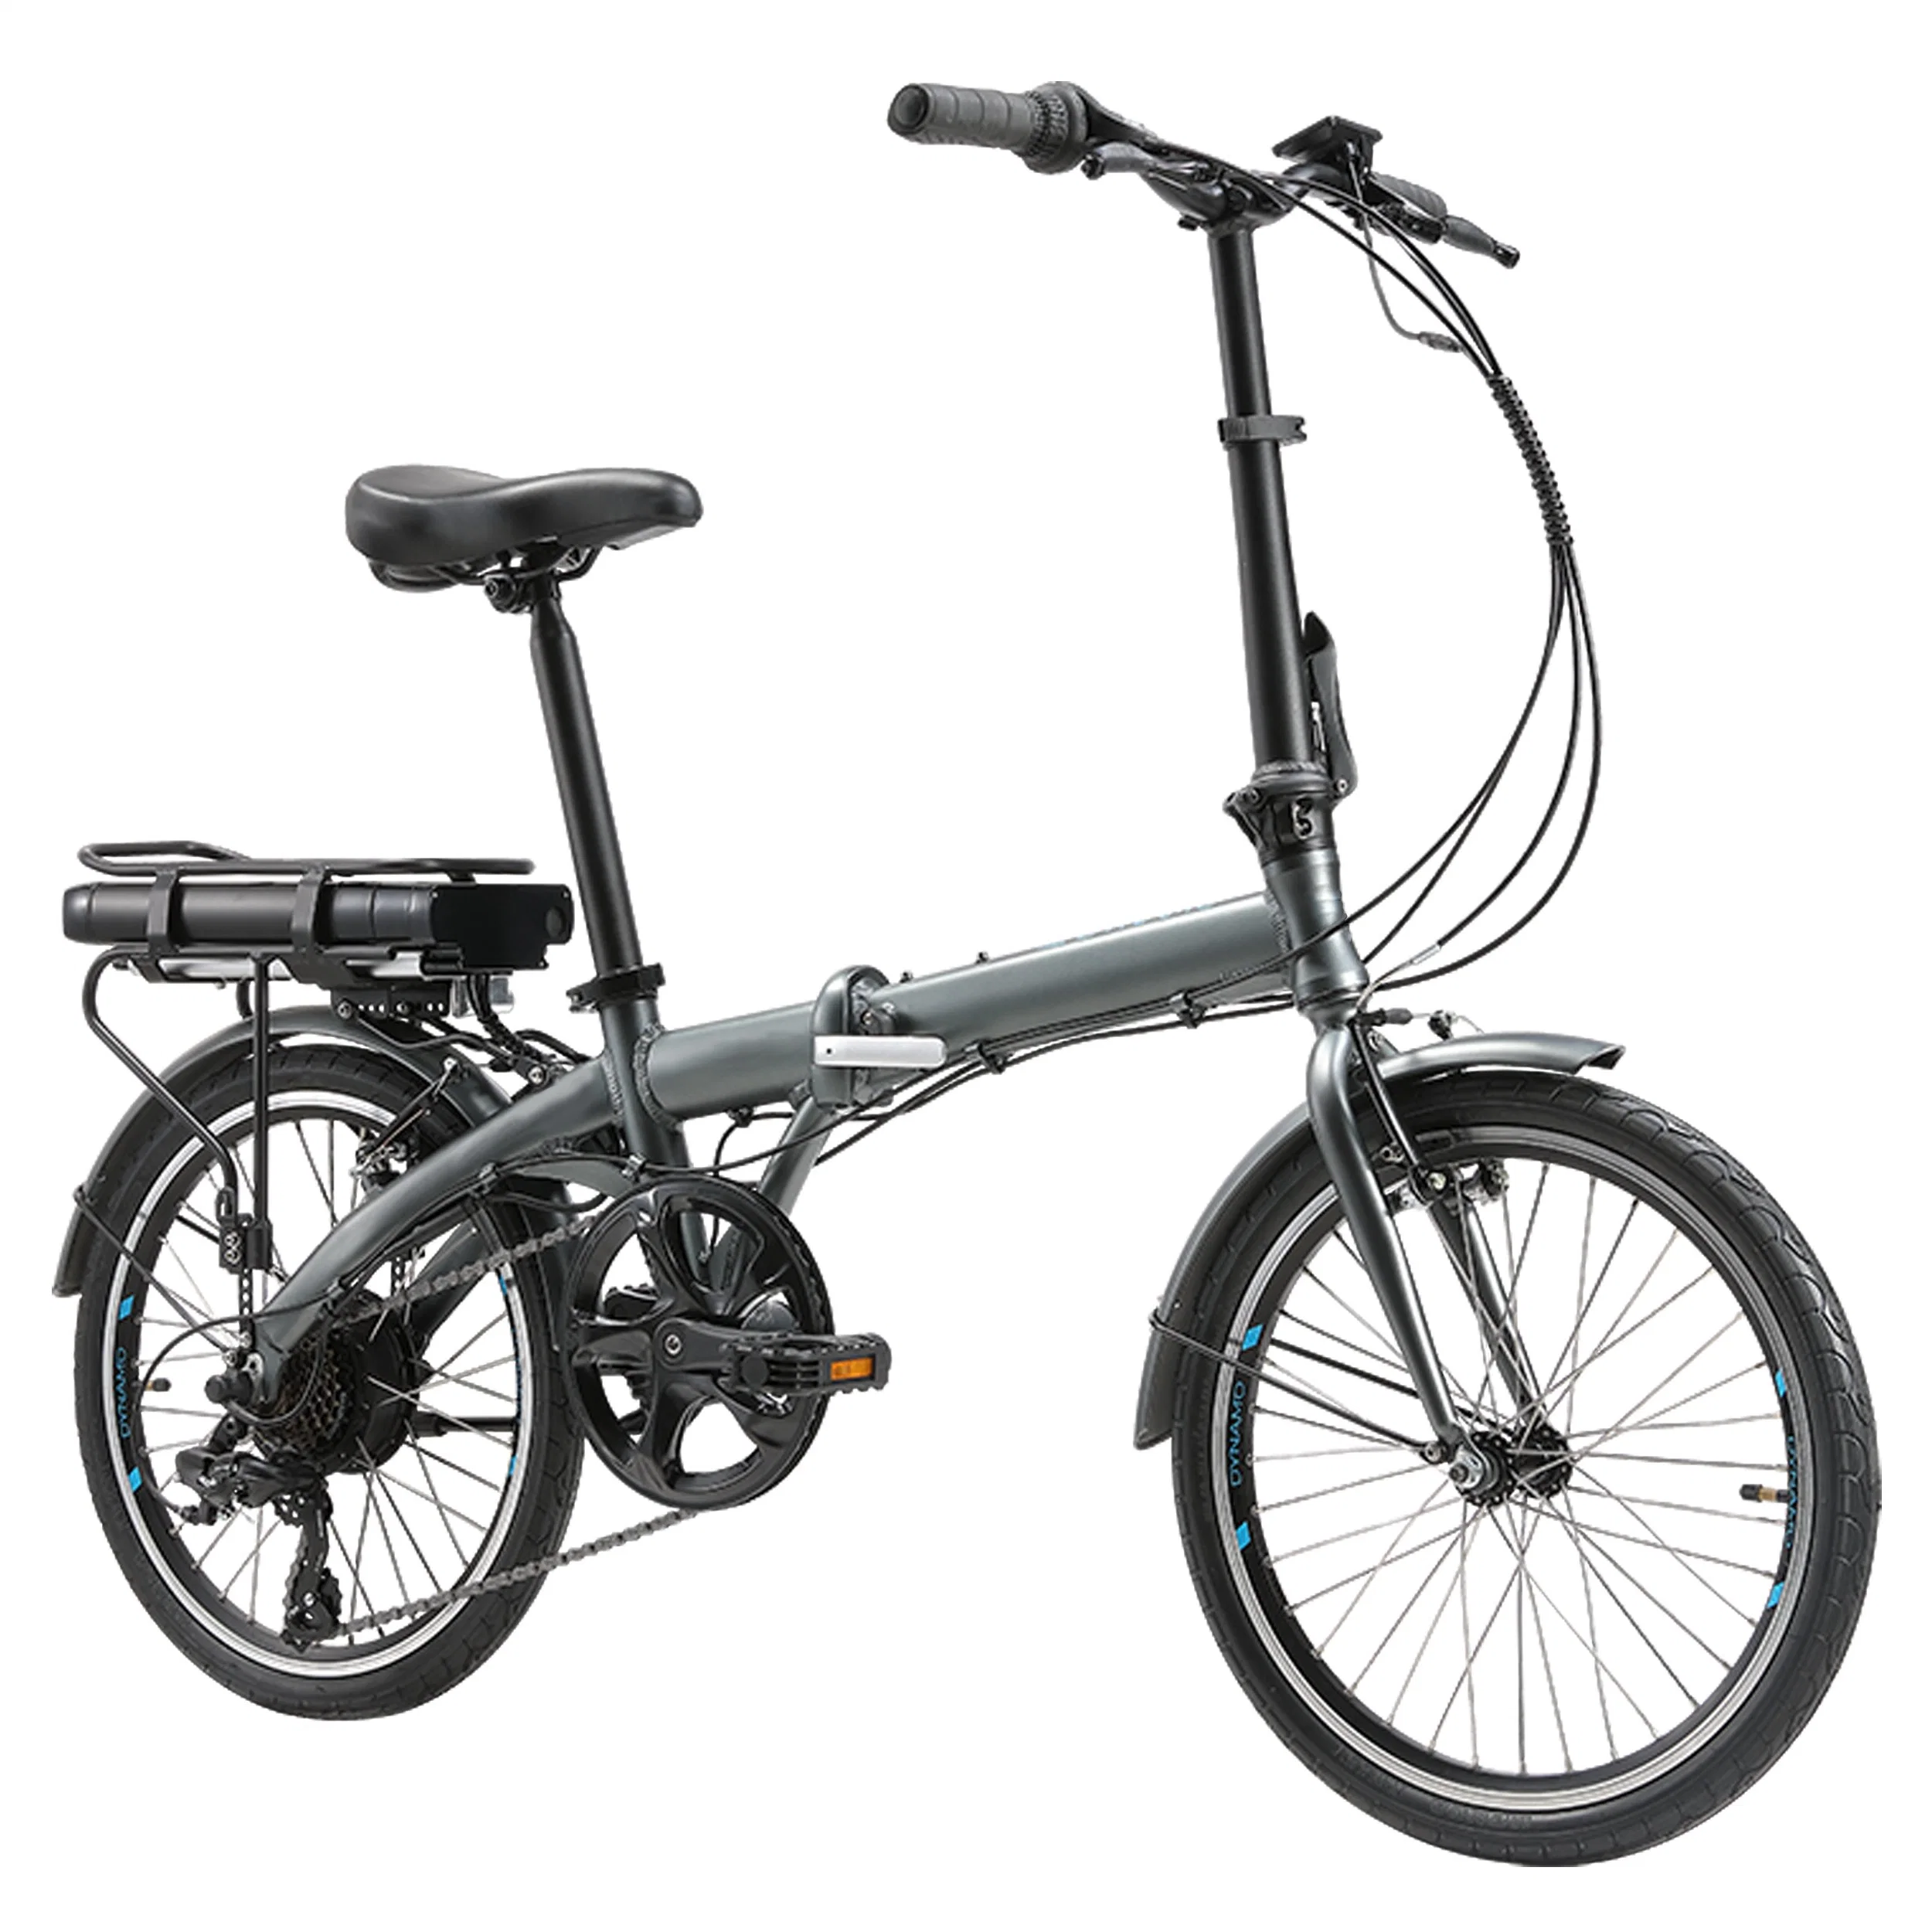 Haute qualité/performance à coût élevé et prix raisonnable Vélo électrique pliant de Chine.